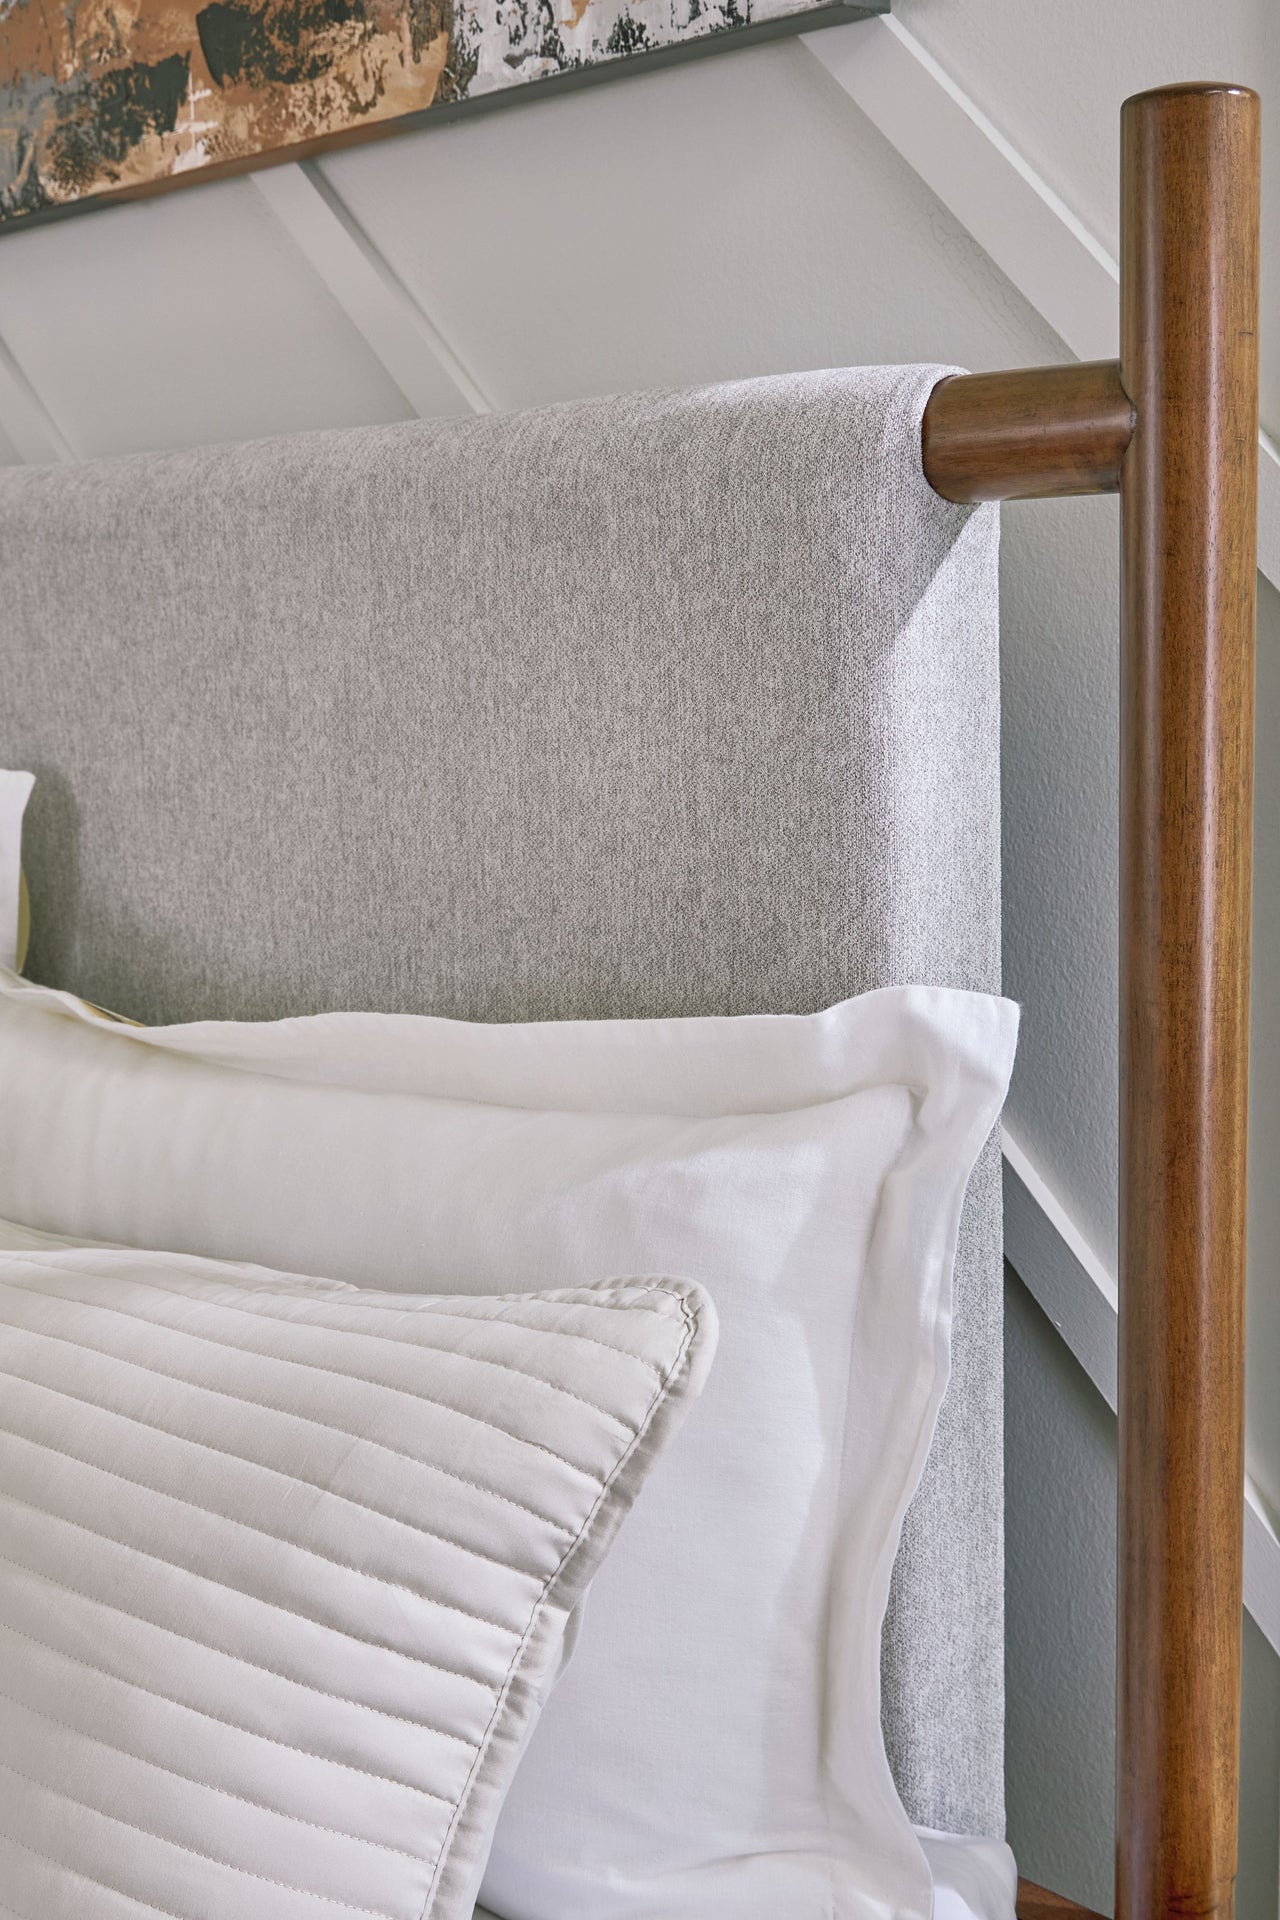 Lyncott - Upholstered Bed - Tony's Home Furnishings